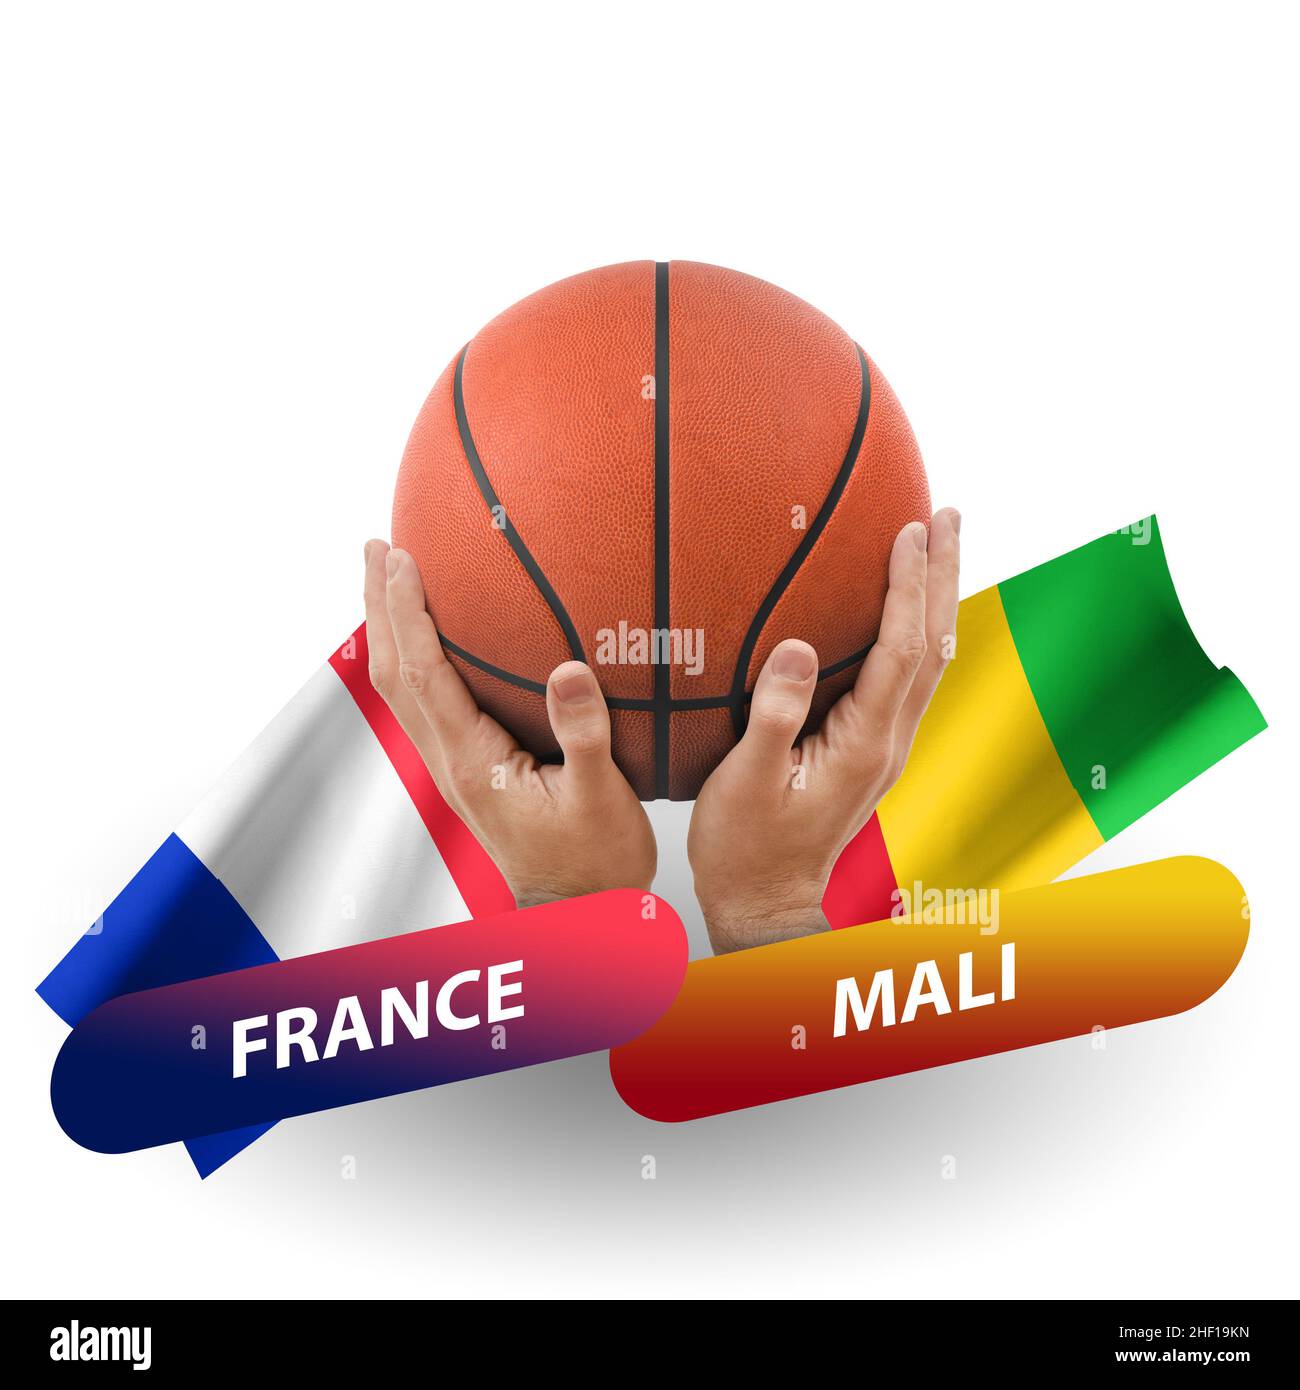 France basketball national team Banque d'images détourées - Page 2 - Alamy